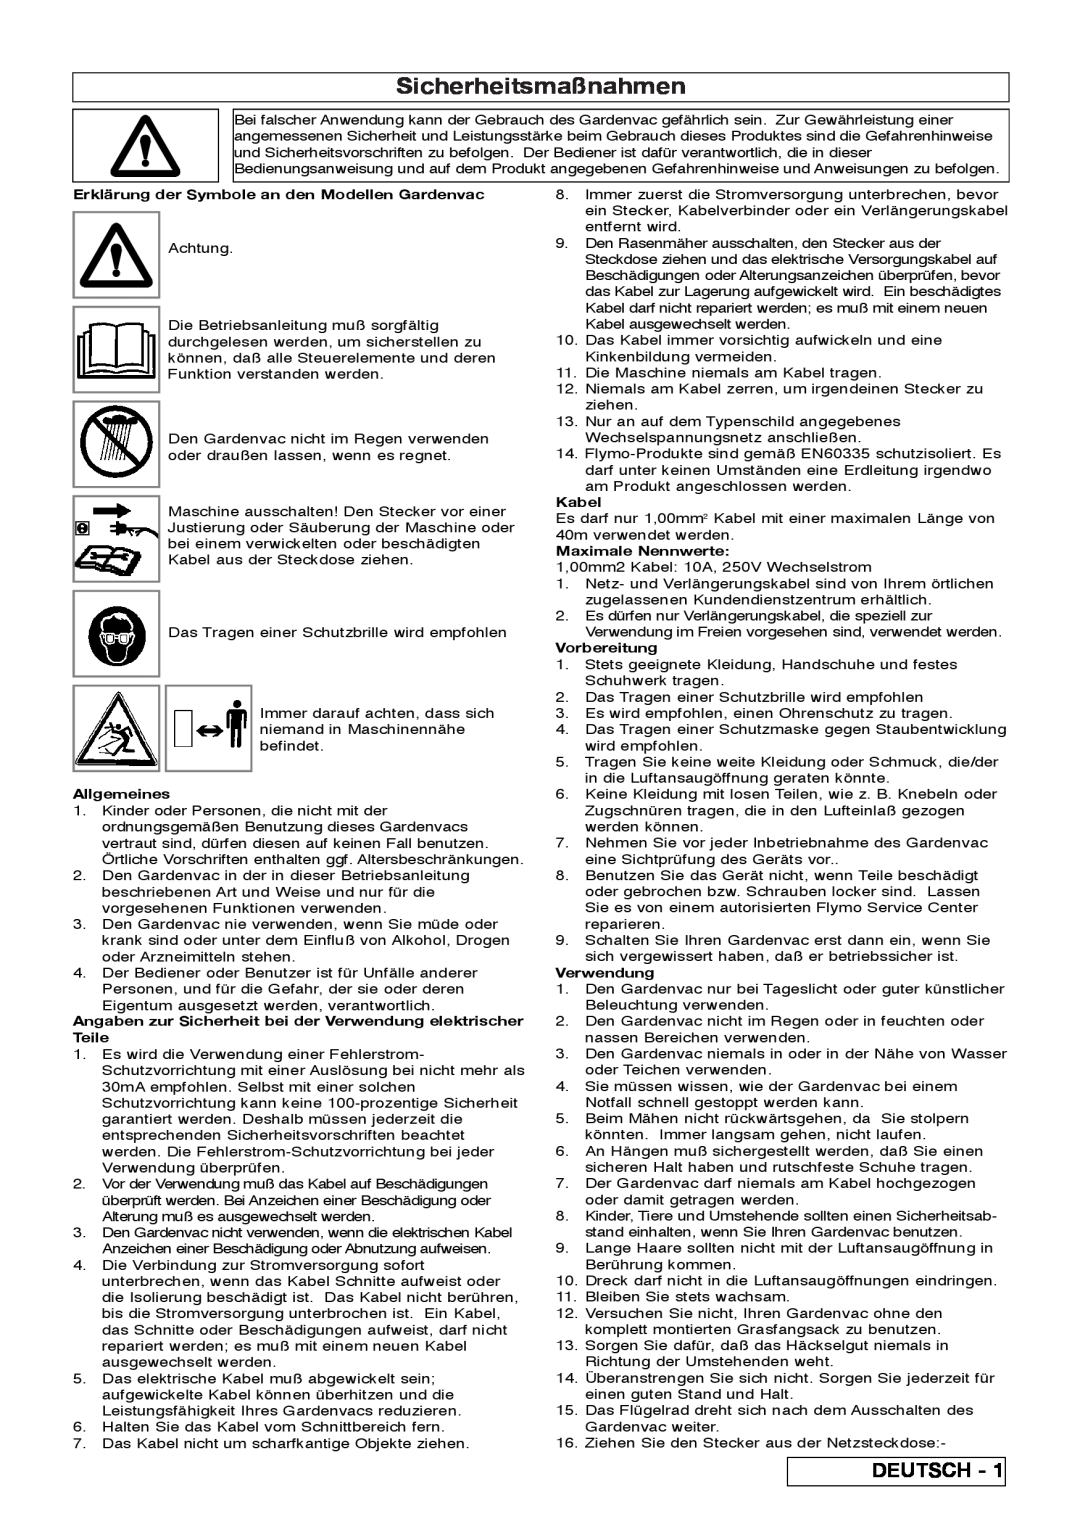 Flymo 2200 Sicherheitsmaßnahmen, Deutsch, Erklärung der Symbole an den Modellen Gardenvac, Allgemeines, Kabel, Verwendung 